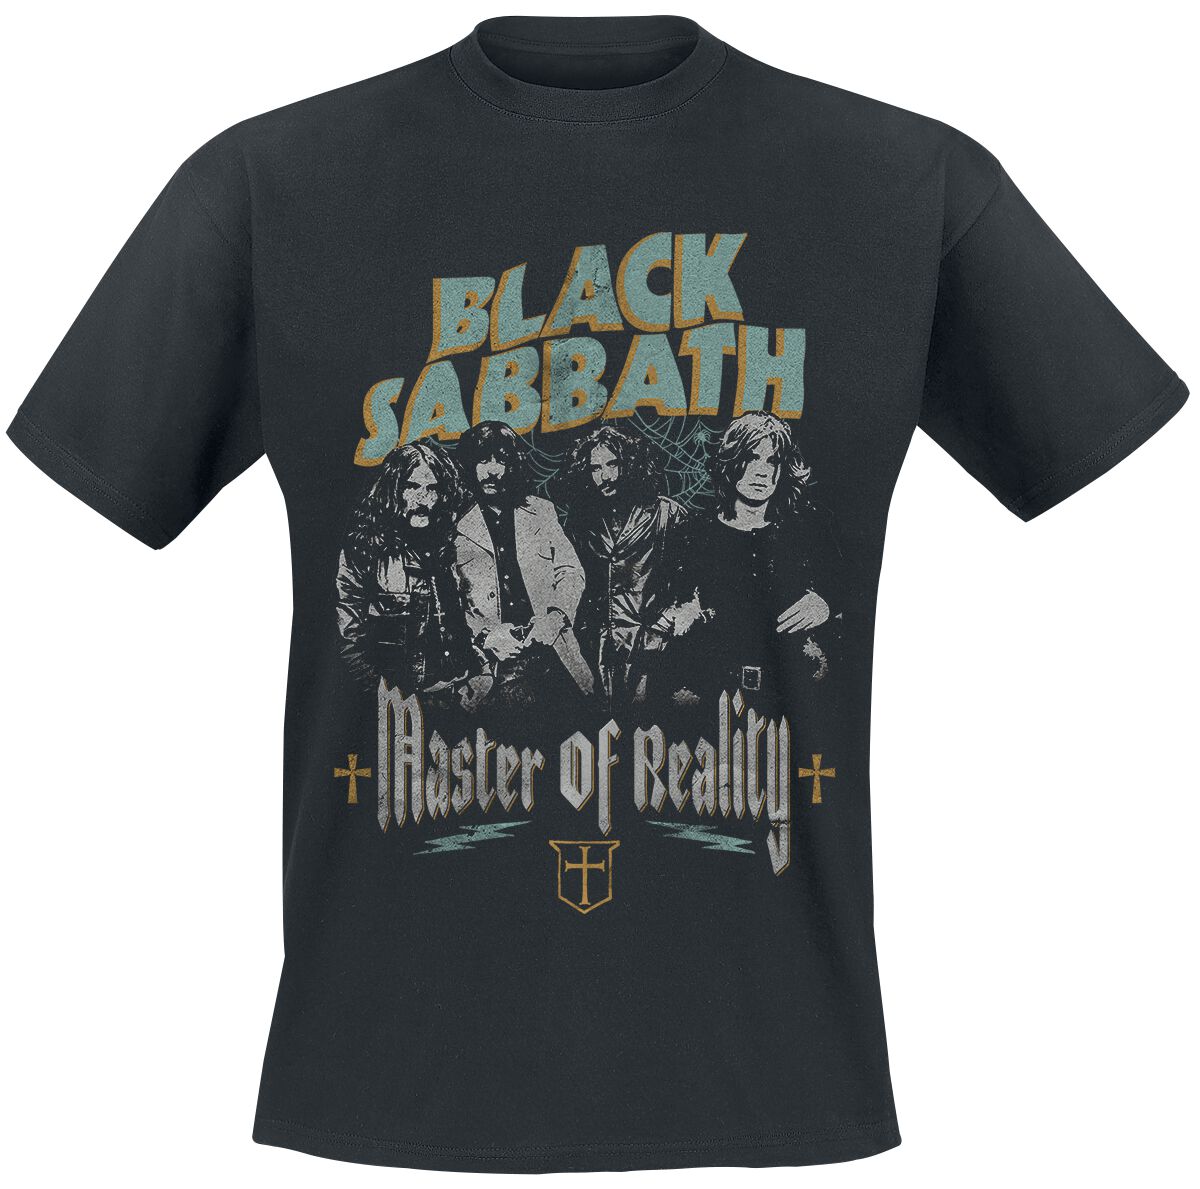 Black Sabbath T-Shirt - Master of reality - S bis 3XL - für Männer - Größe L - schwarz  - Lizenziertes Merchandise!